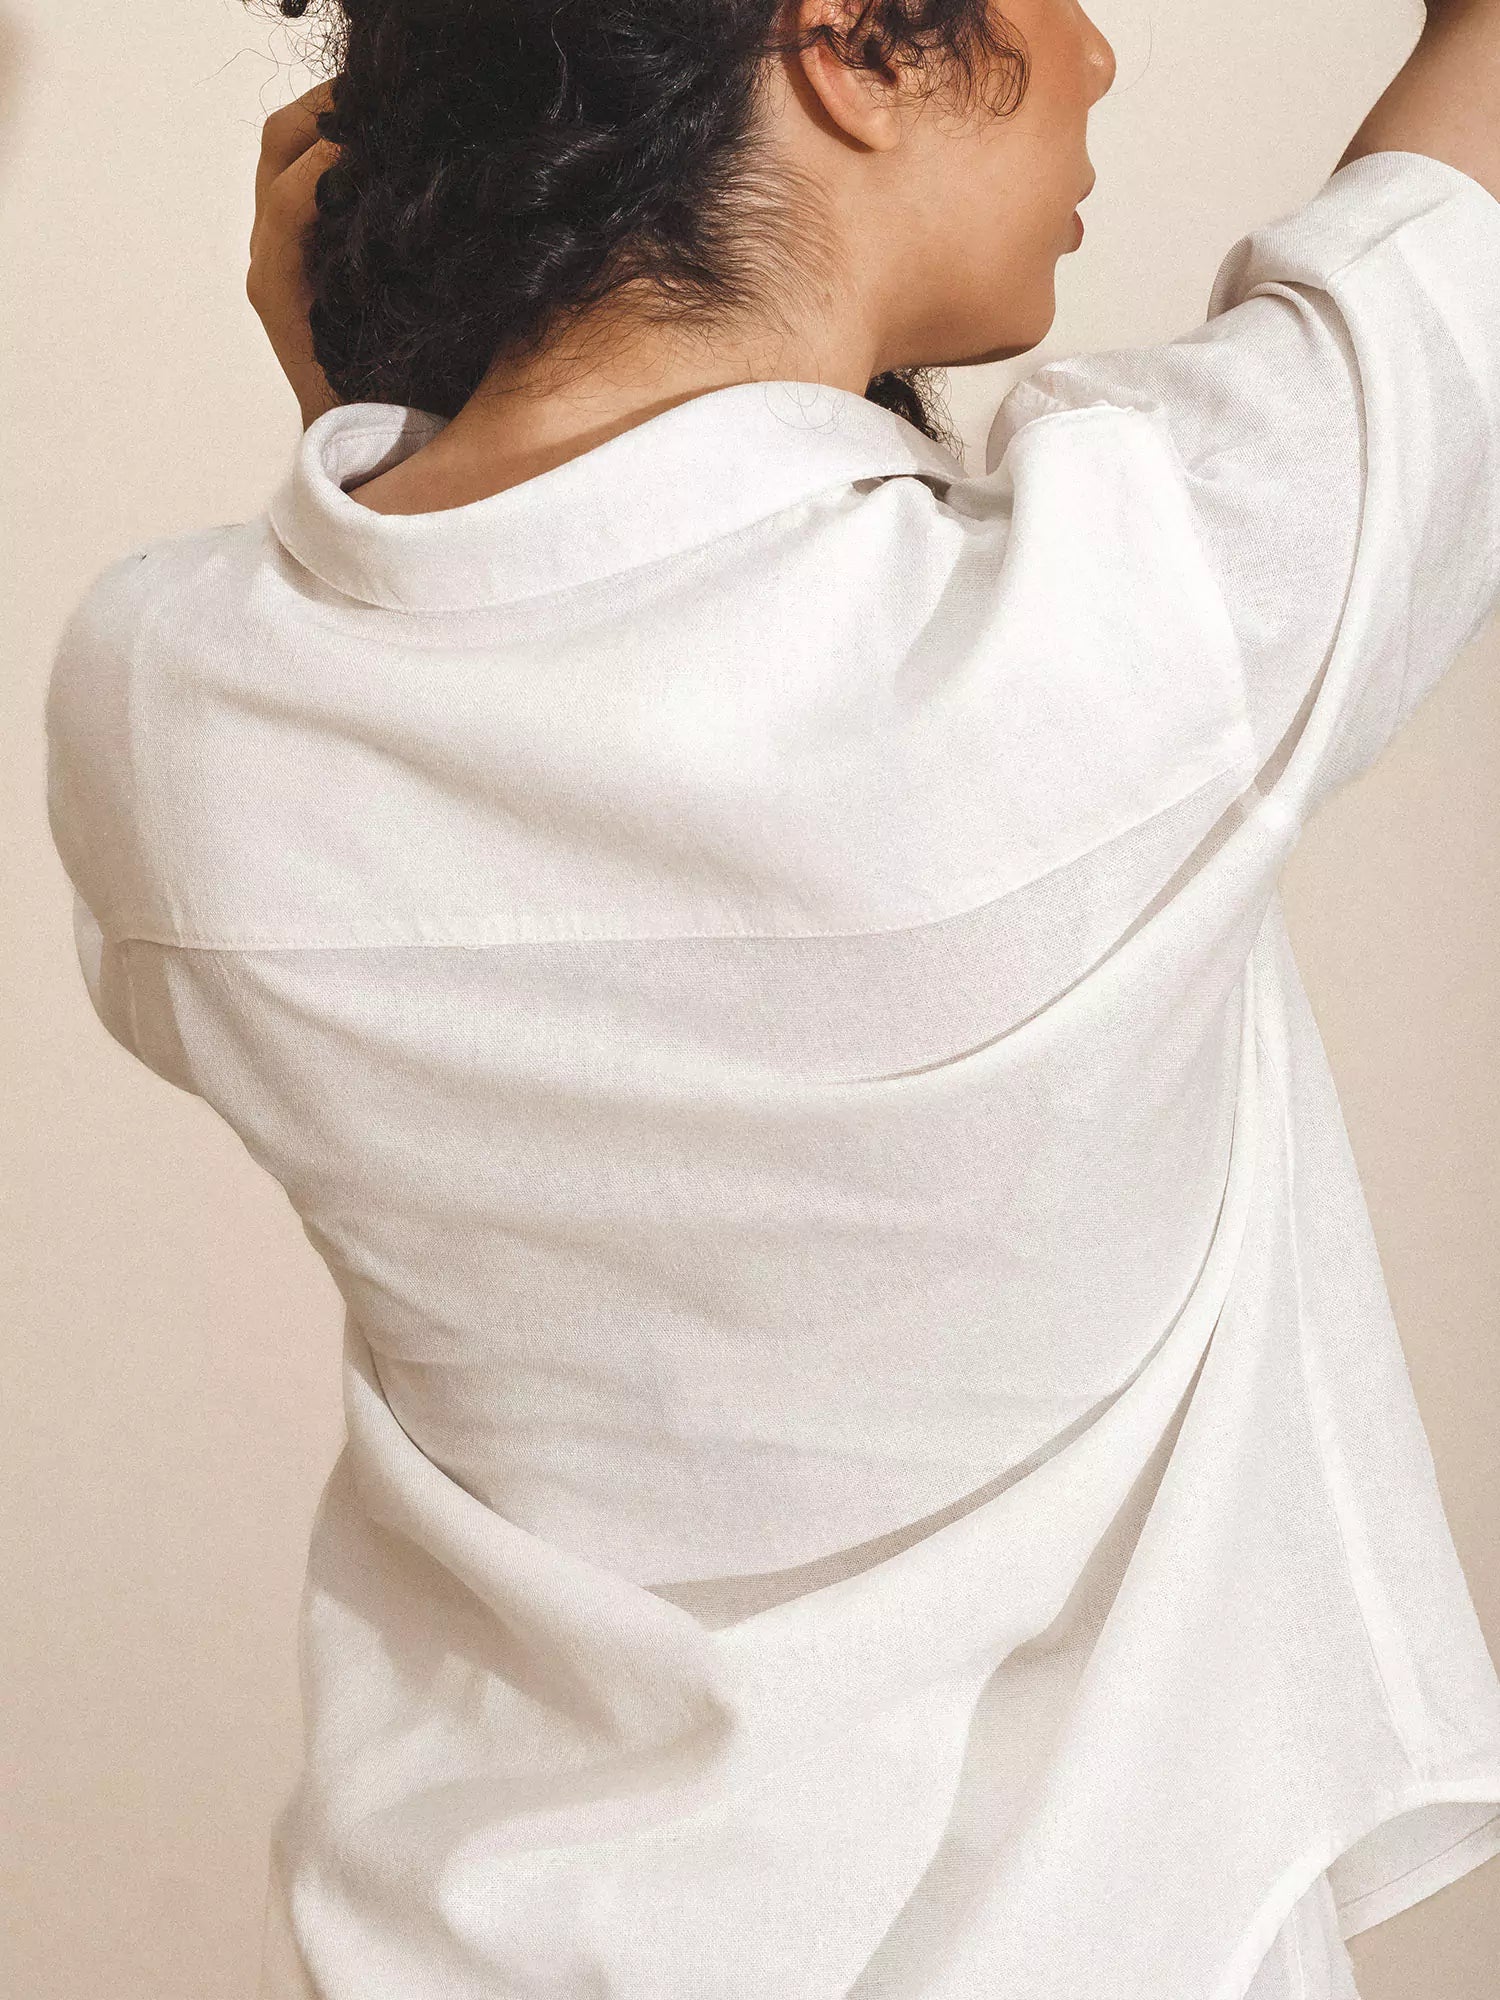 Camisa Manga Curta de Linho e Viscose FSC™ Branca Off White. Compre online moda sustentável e atemporal na Minimadeia. Roupas femininas estilosas, básicas e sustentáveis. Foto produto 09